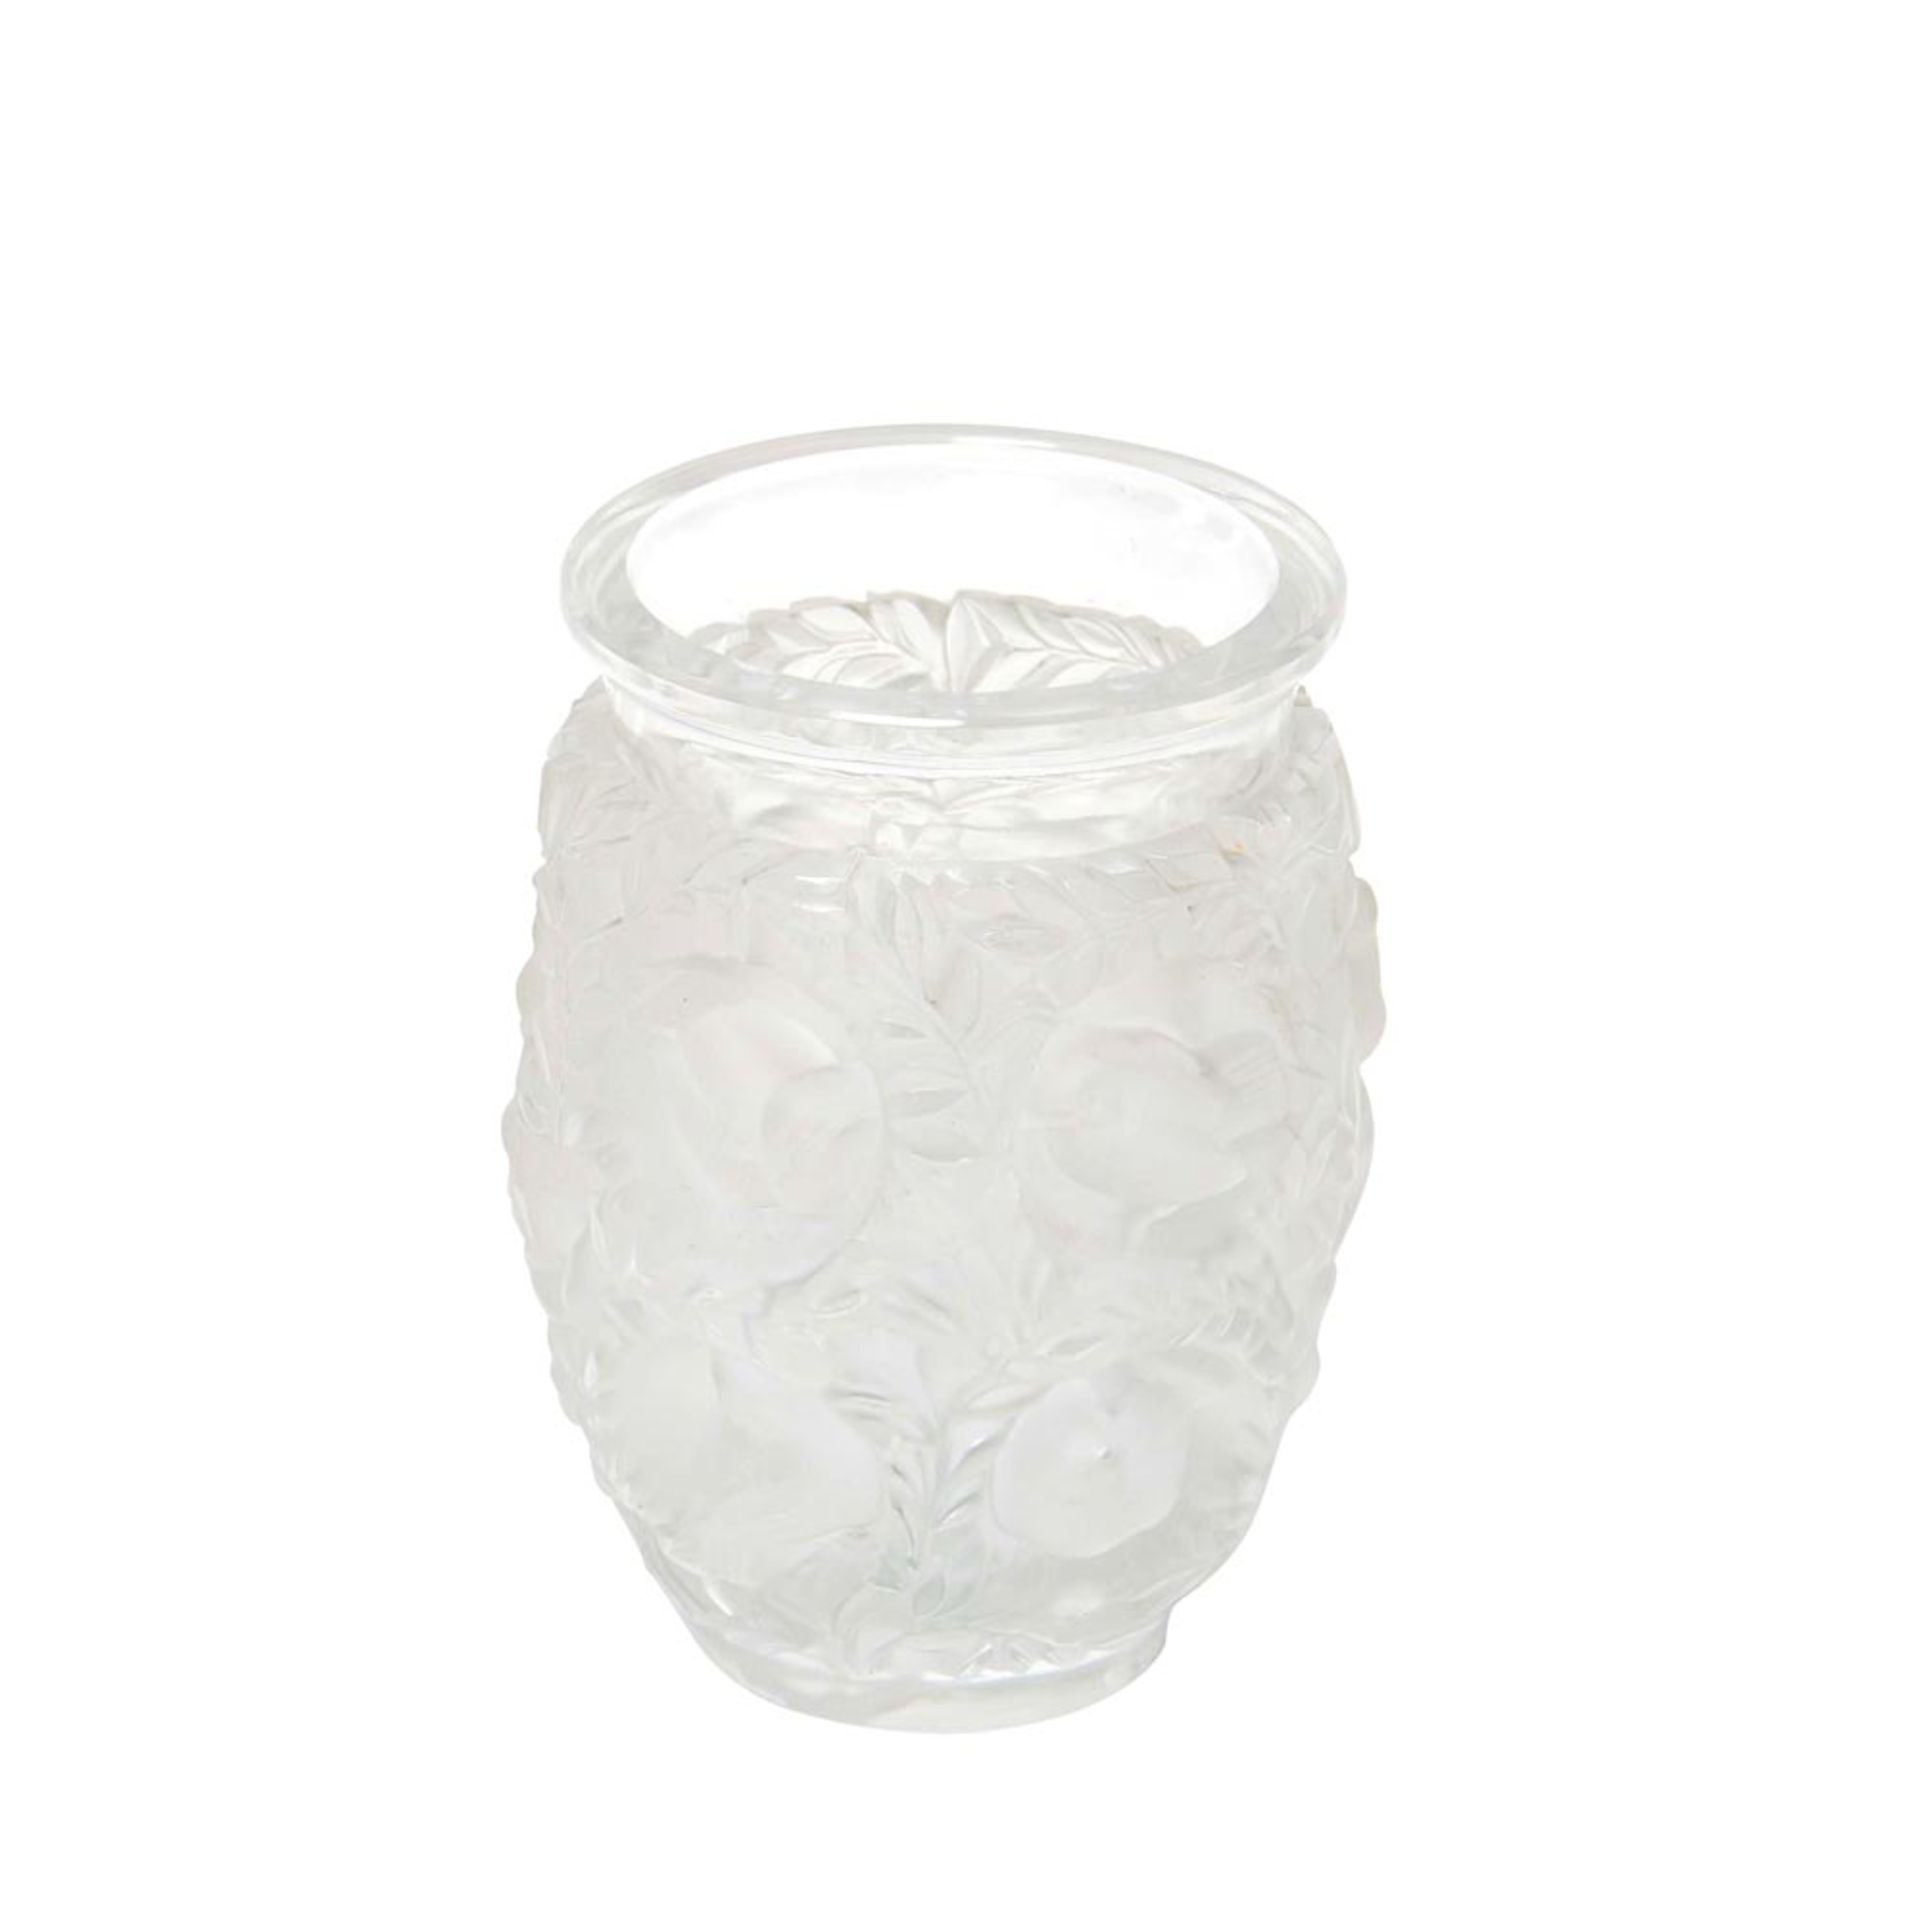 Lalique glass "Bagatelle" vase